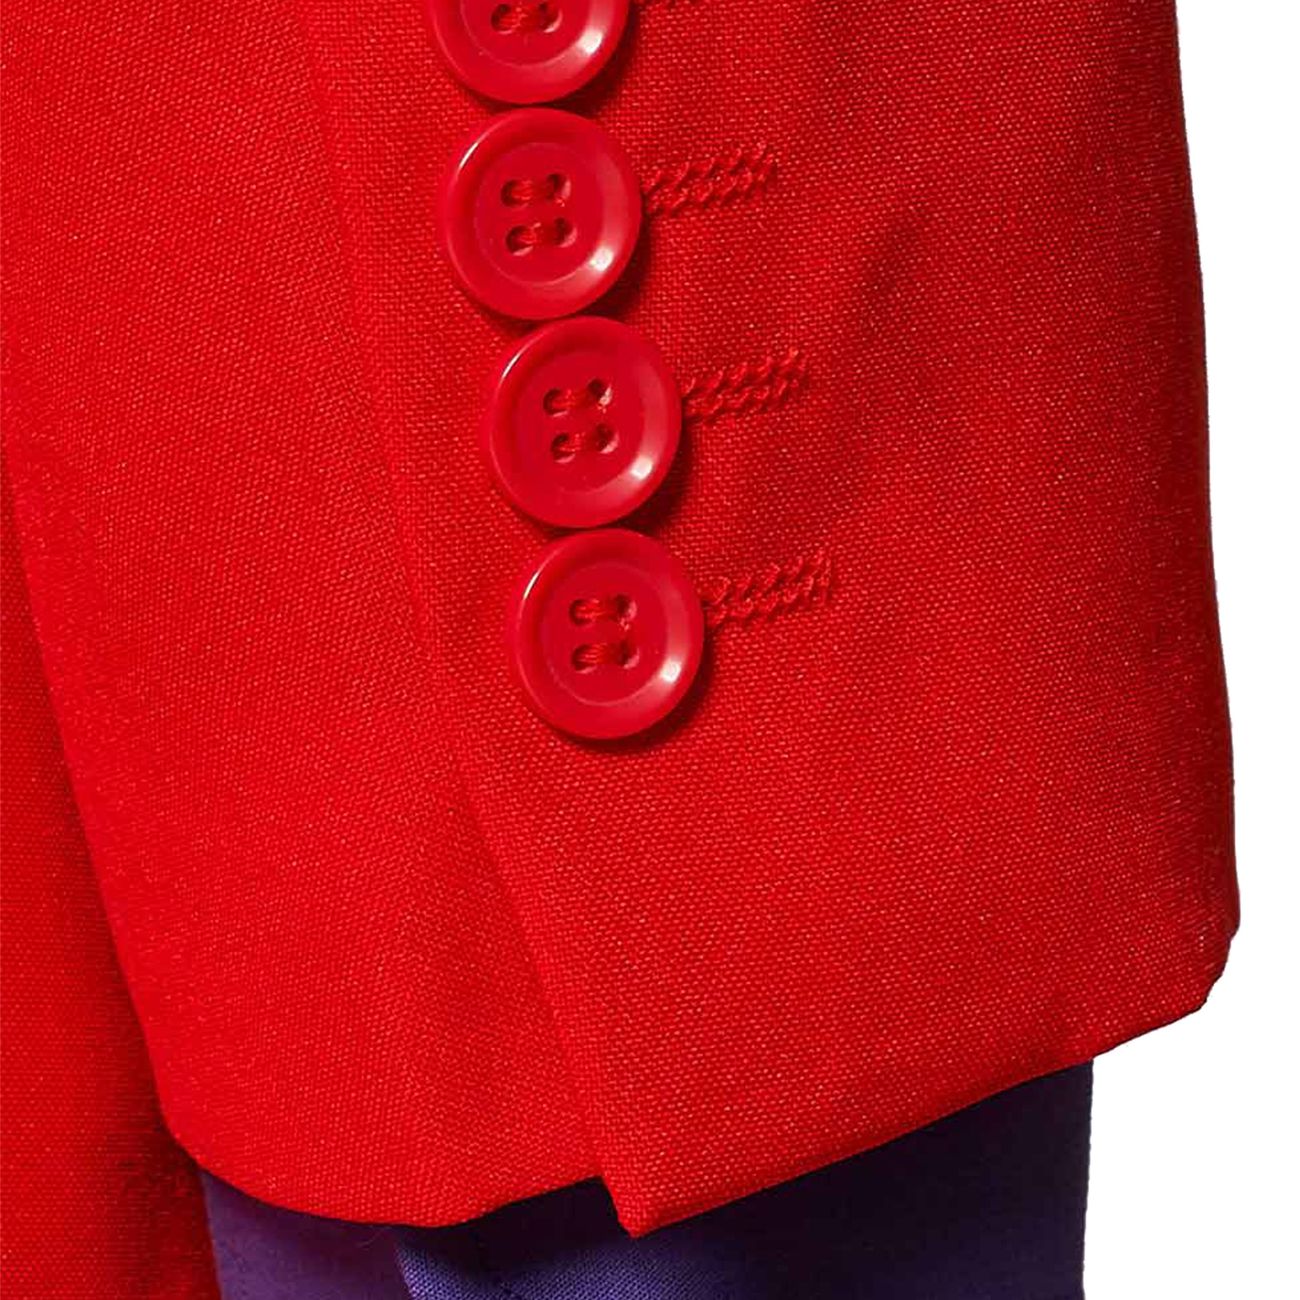 opposuits-red-devil-kostym-16980-17